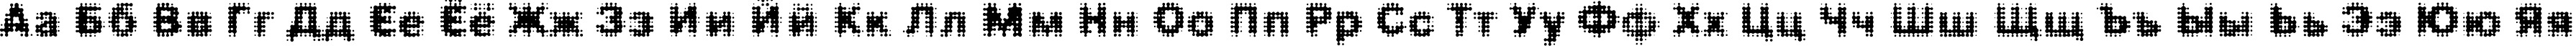 Пример написания русского алфавита шрифтом FDMedian